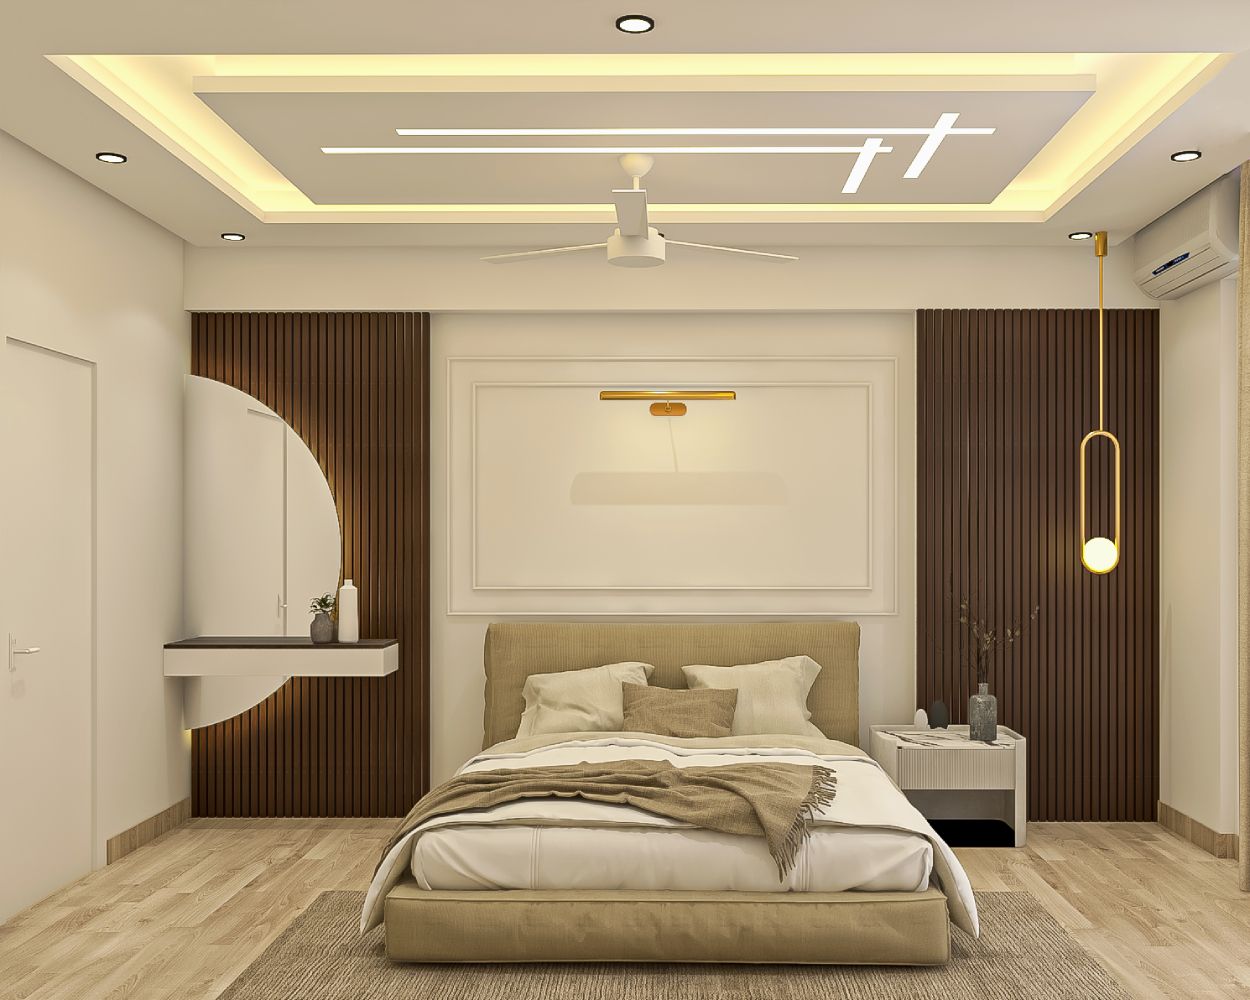 Plus-Minus POP Contemporary Rectangular Ceiling Design